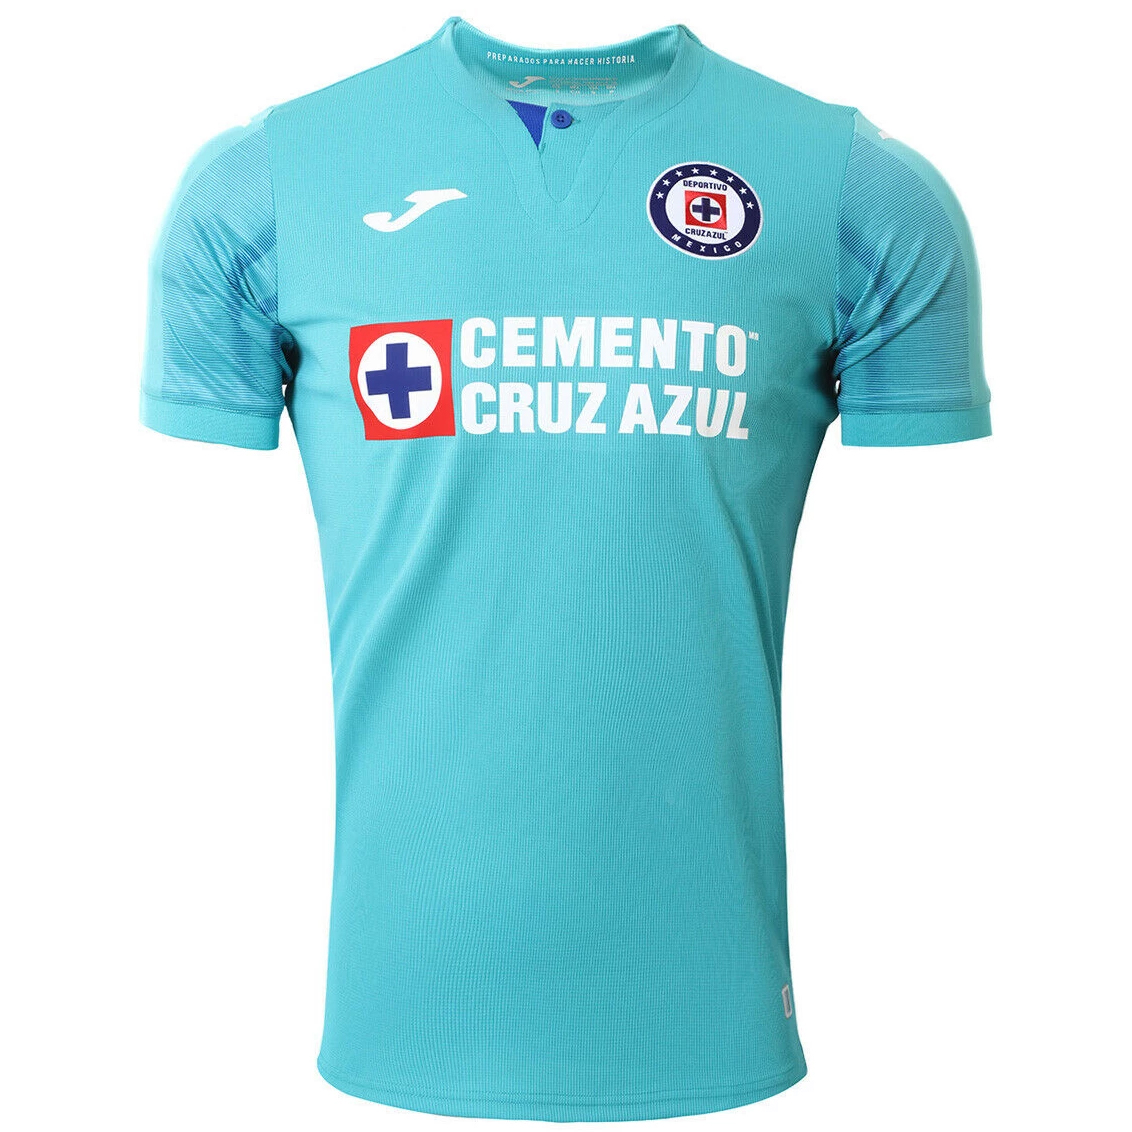 19/20 Cruz Azul home blue fans soccer jersey